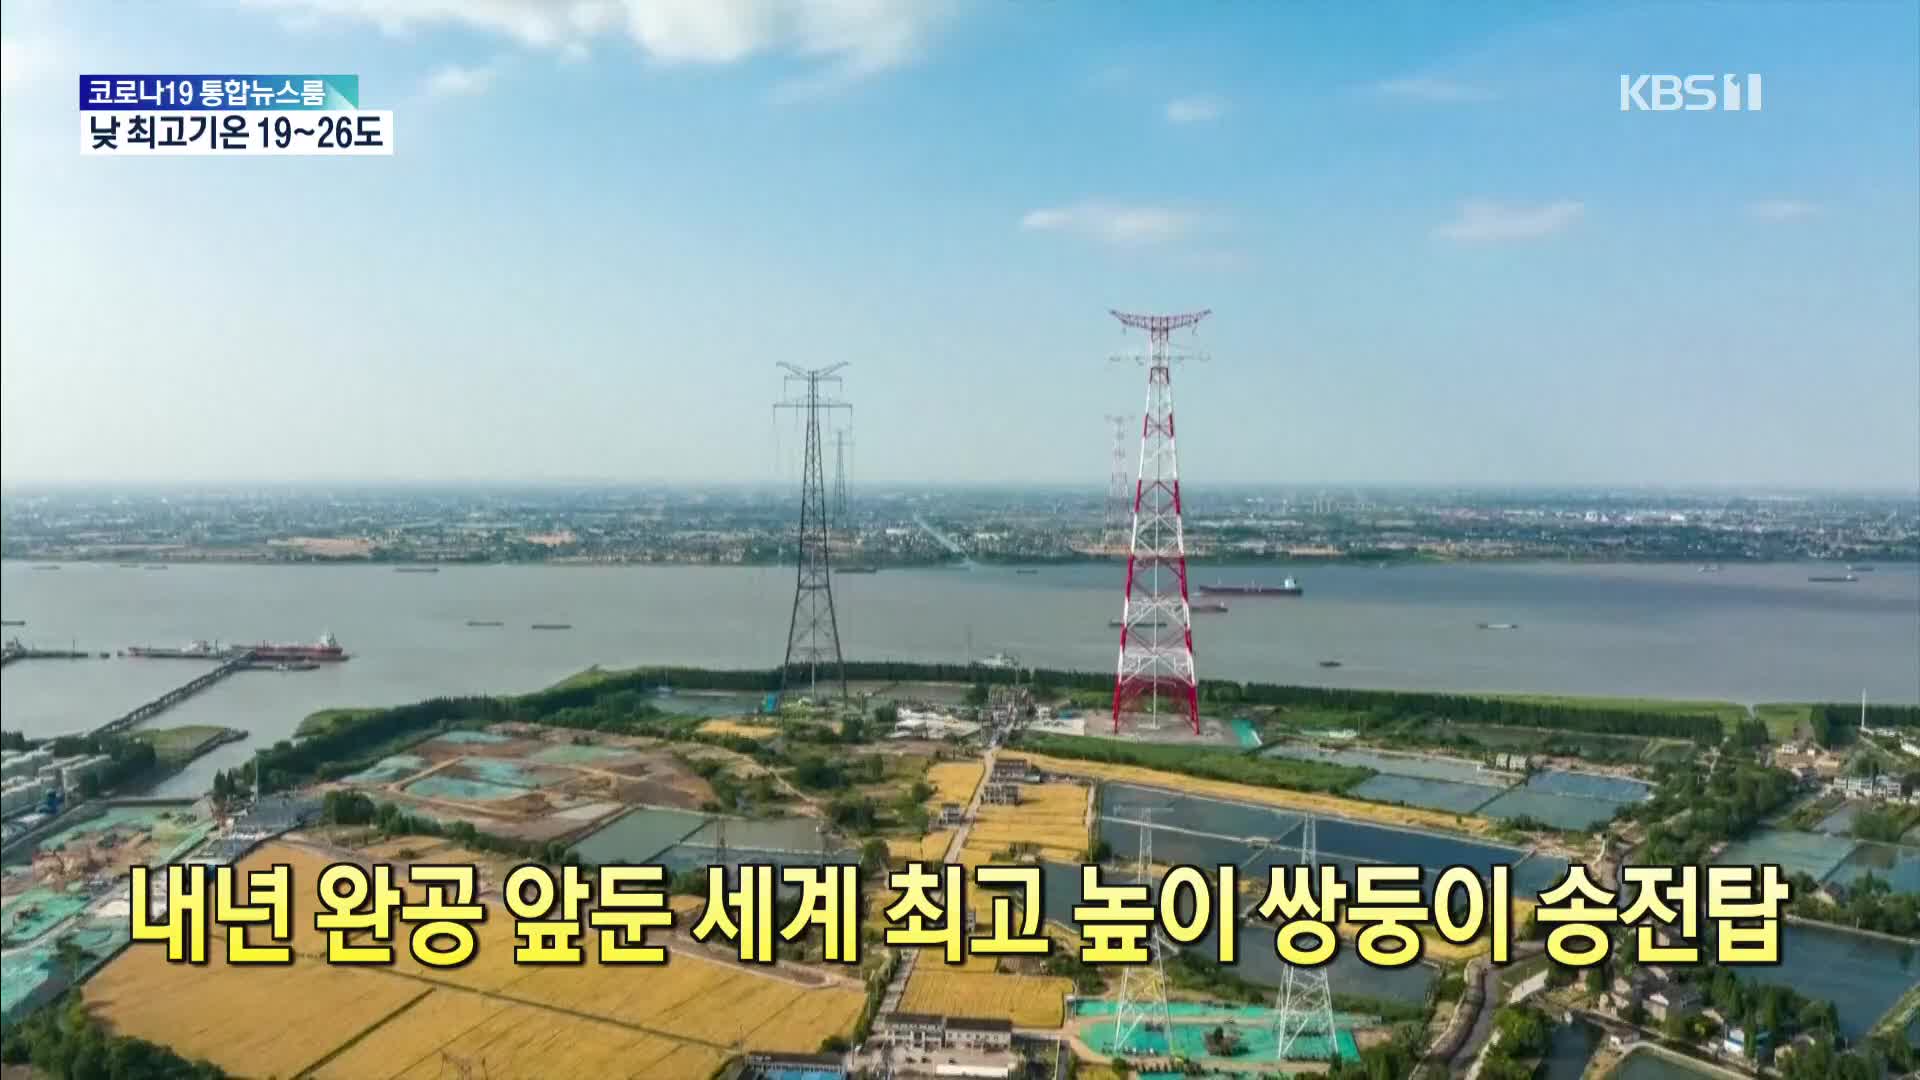 [톡톡 지구촌] 내년 완공 앞둔 세계 최고 높이 쌍둥이 송전탑